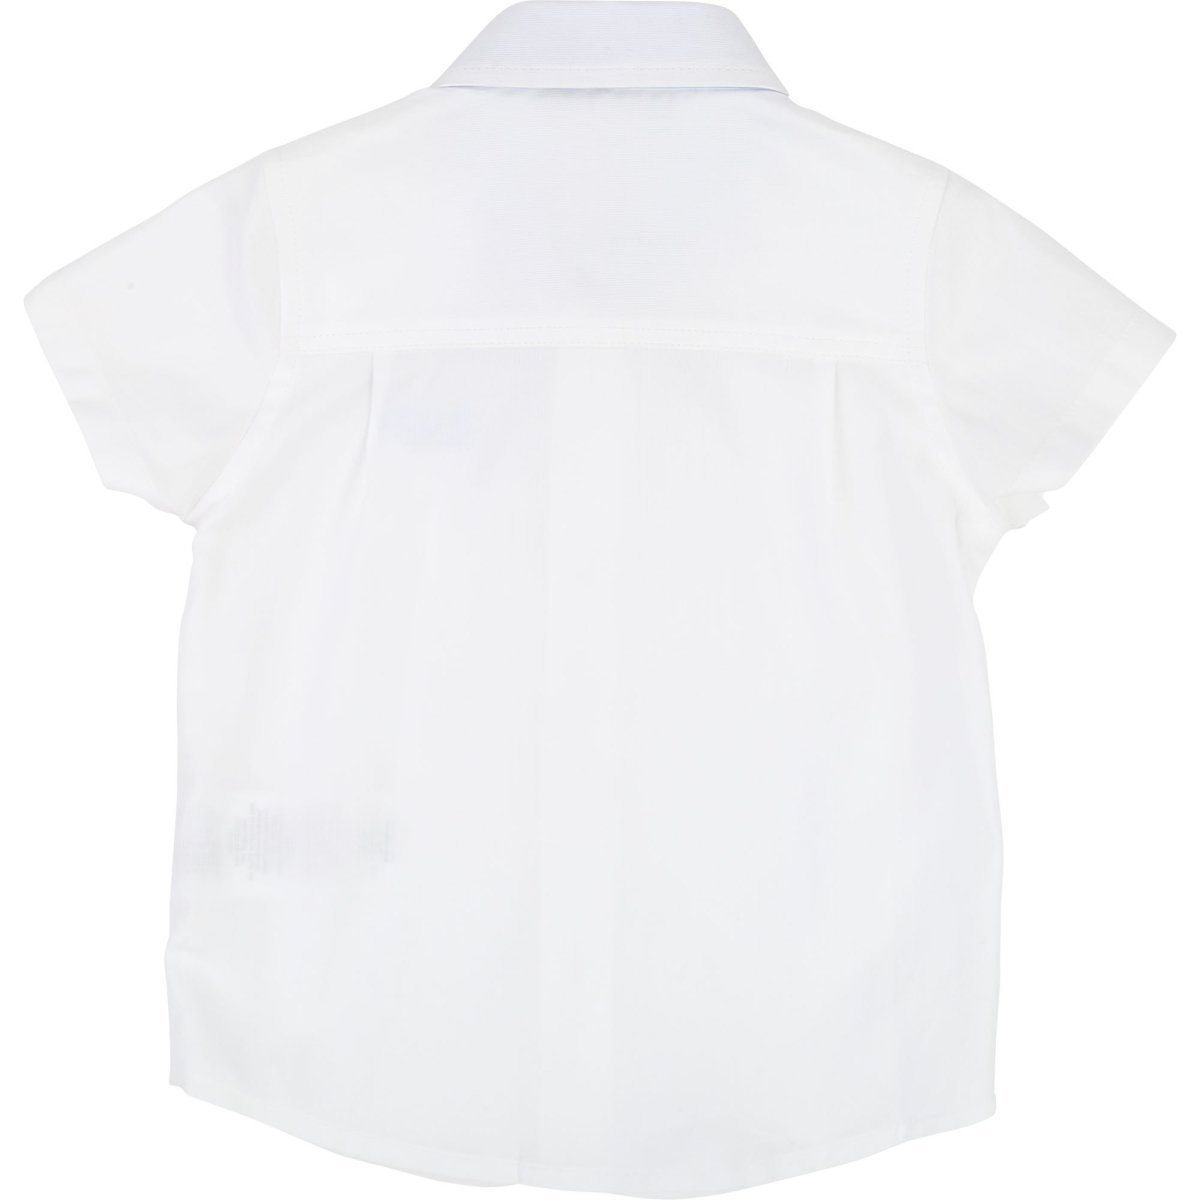 Hugo Boss Toddler Short Sleeve White Dress Shirt Dress Shirts Hugo Boss 